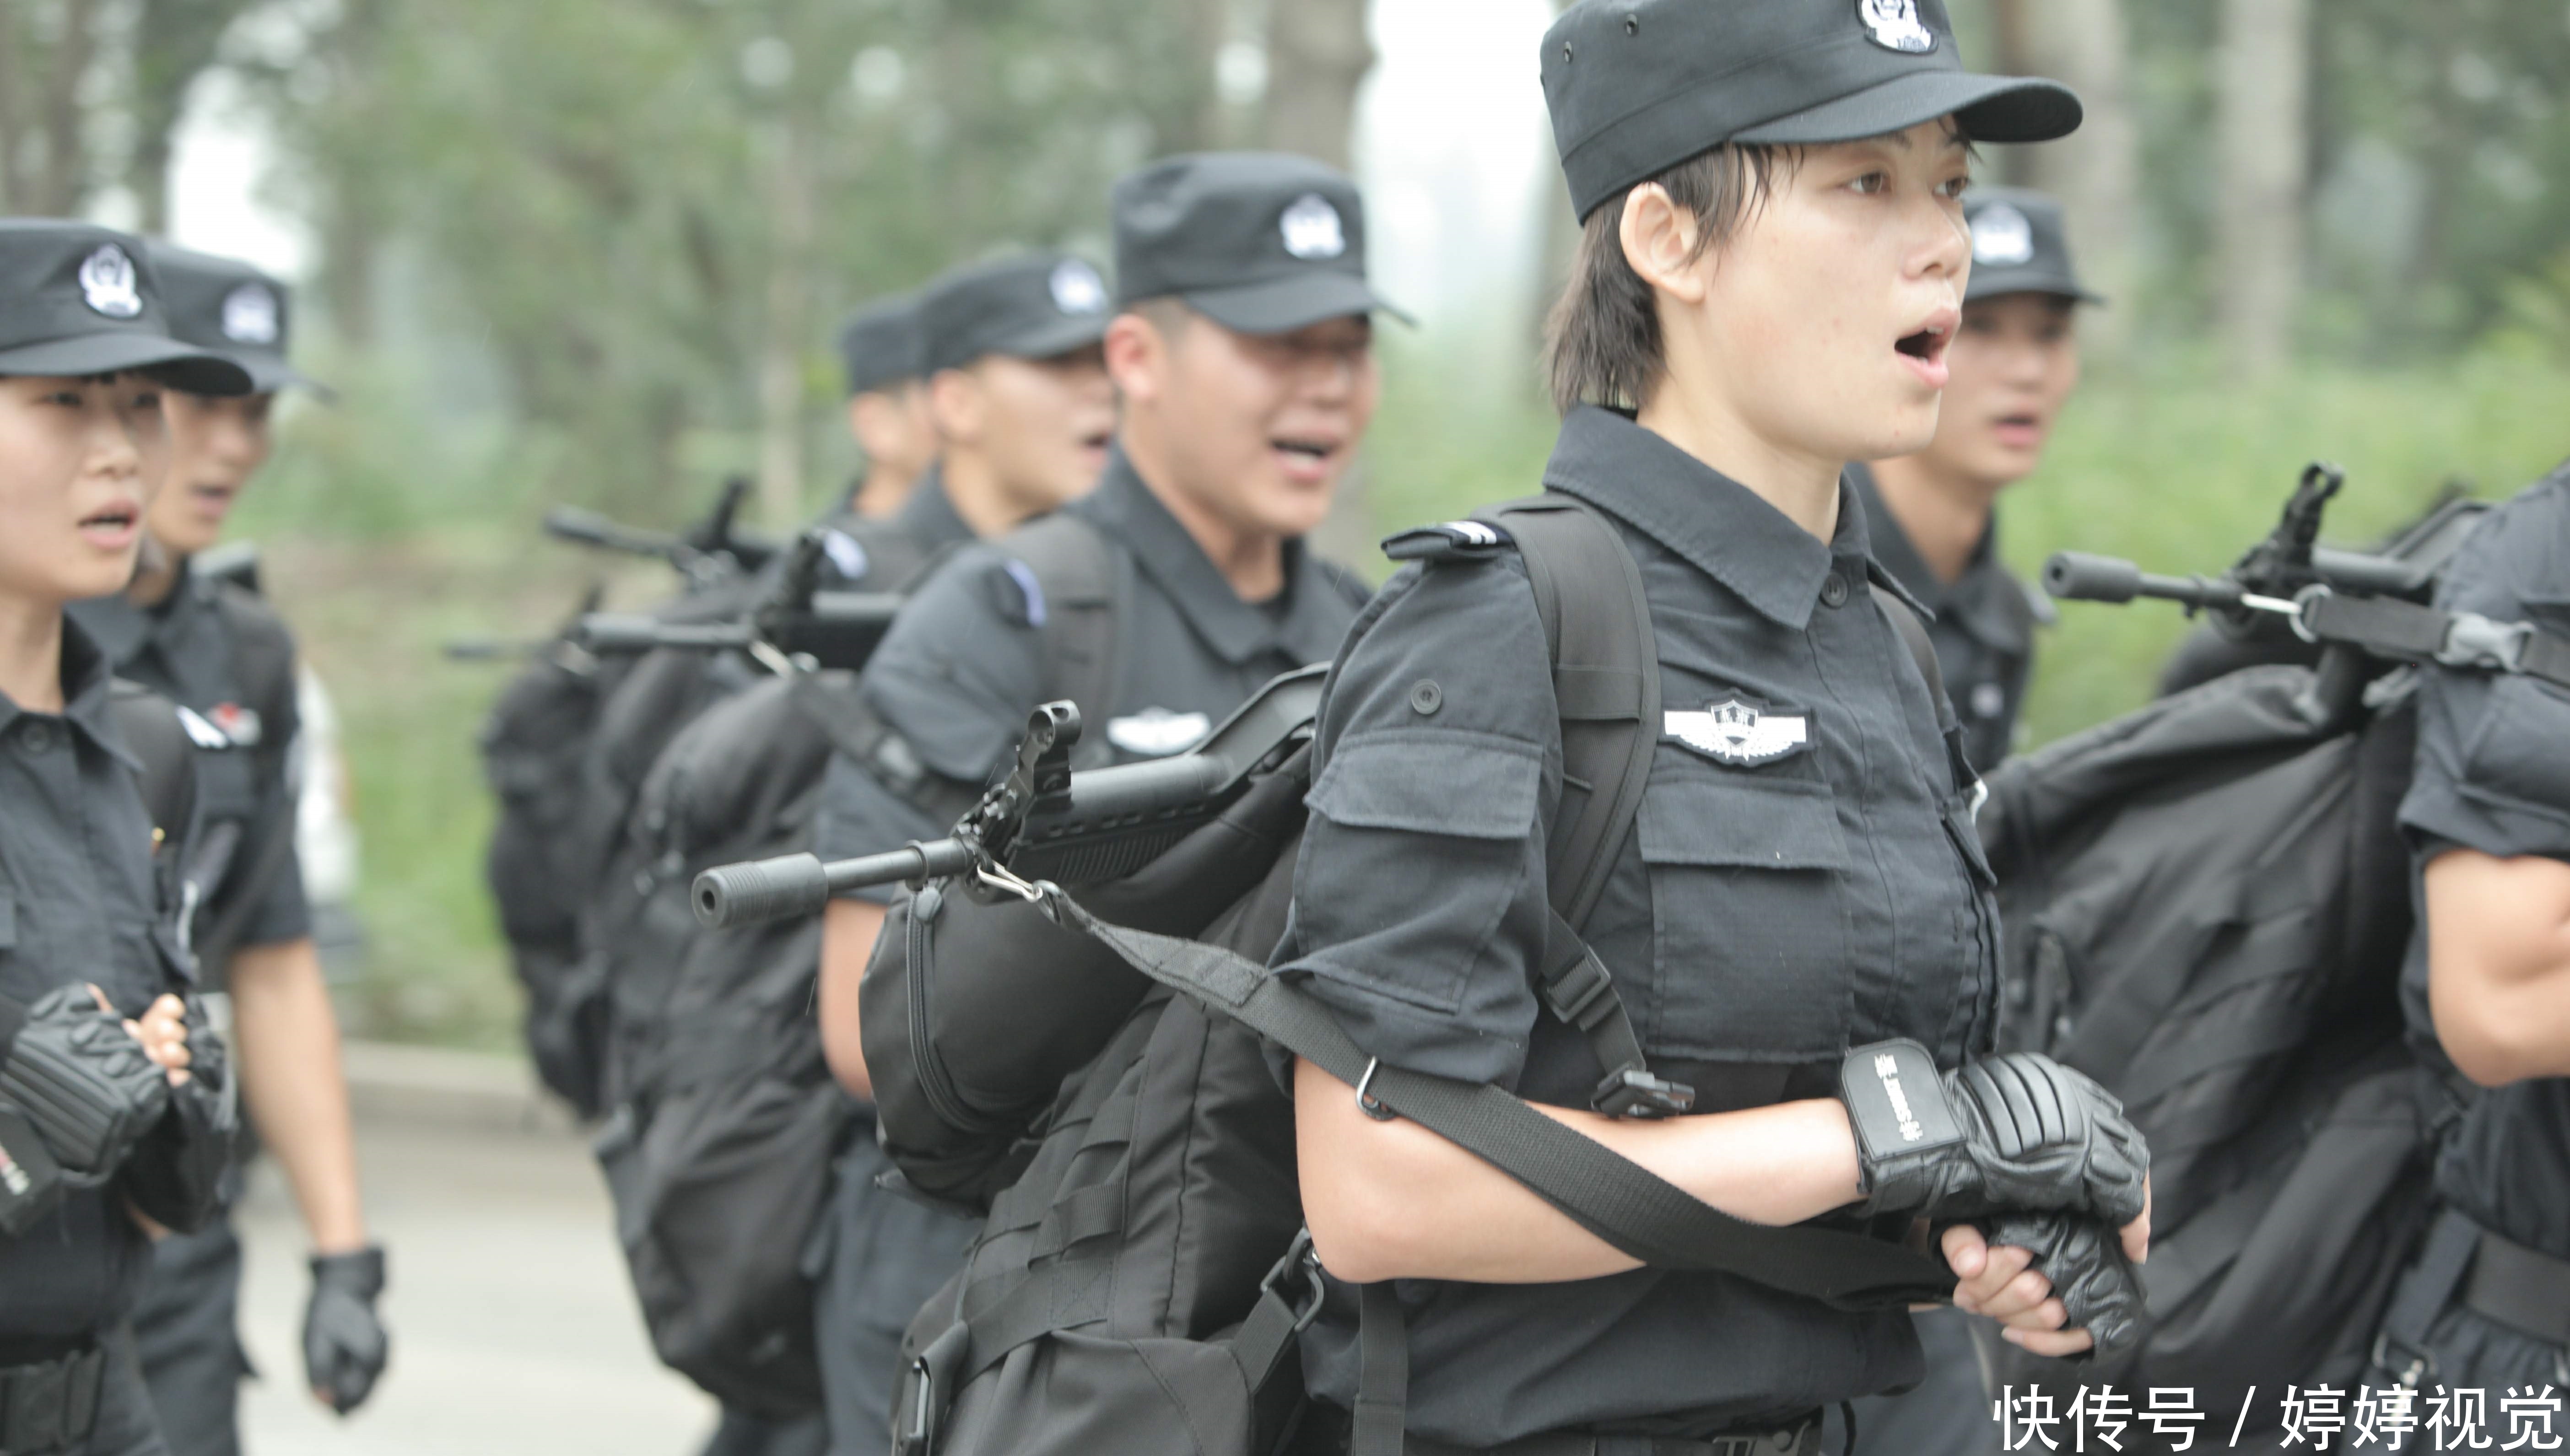 同在郑州的铁道警察学院和河南警察学院哪个好?